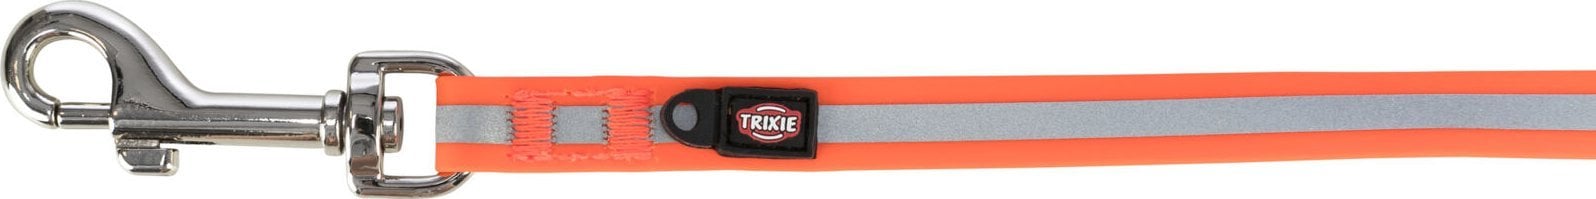 Trixie Easy Life, lesă de antrenament, portocaliu, bandă de bandă, M-L: 5 m/13 mm, reflectorizantă